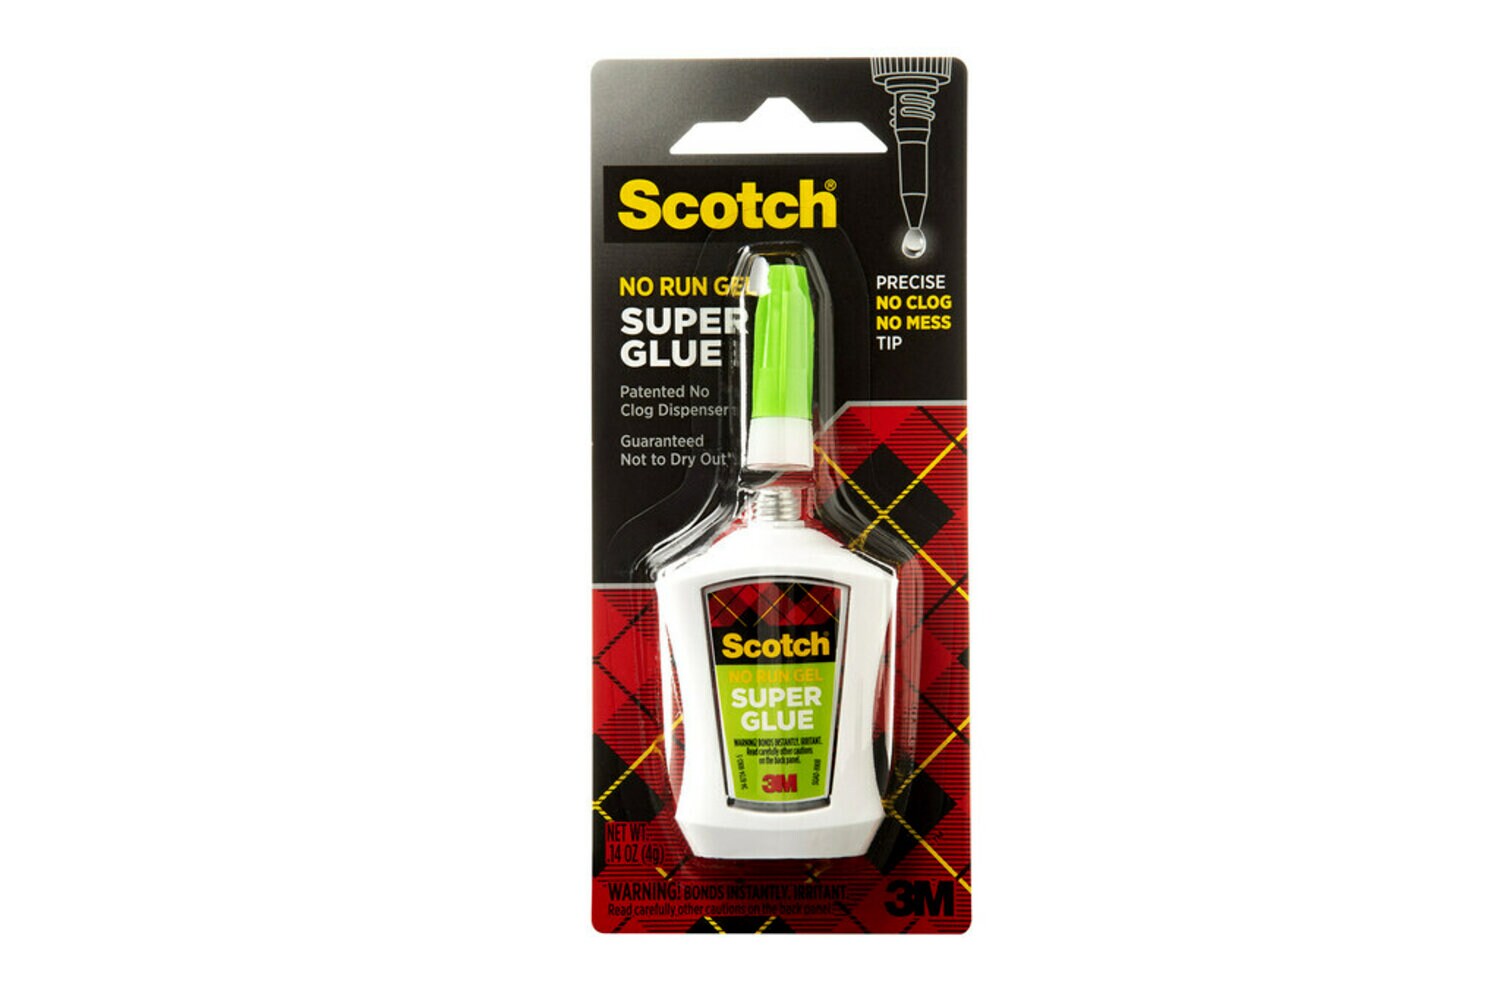 7100035277 - Scotch Super Glue Gel in Precision Applicator, AD125, .14 oz (4 g)